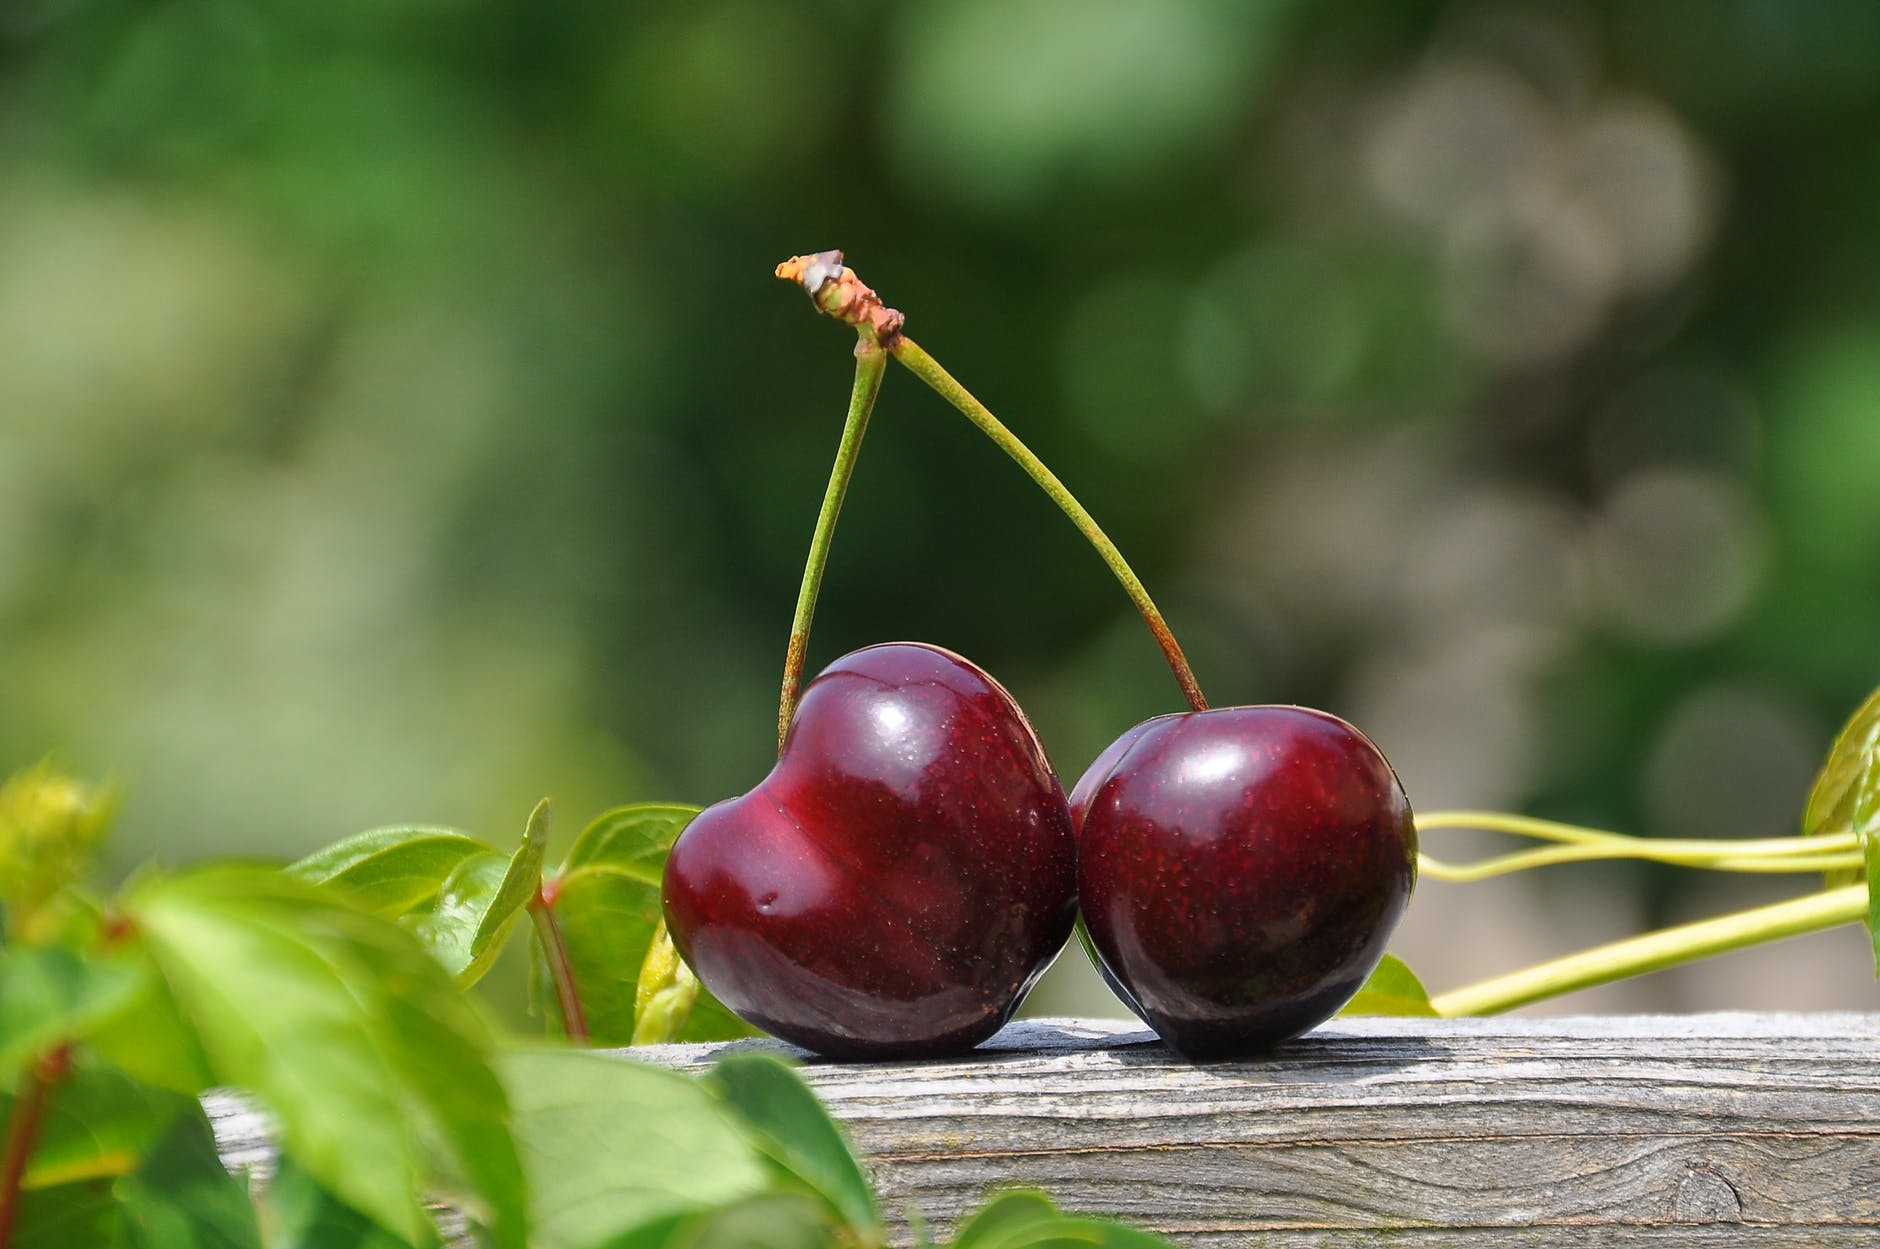 7 Cherry Health Benefits  Top Benefits of Cherries from Dietitians